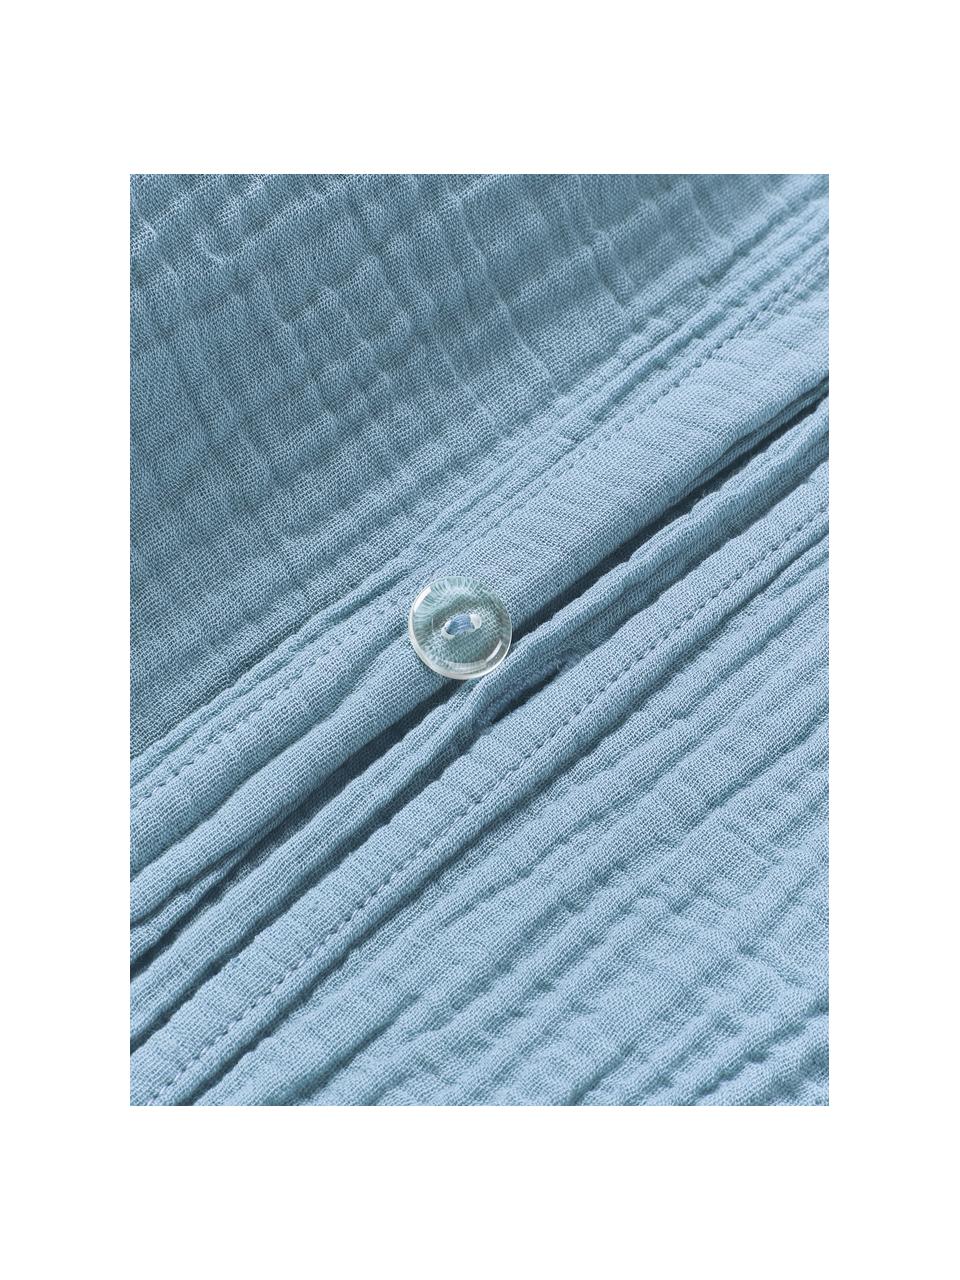 Poszwa na kołdrę z muślinu bawełnianego Odile, Szaroniebieski, S 200 x D 200 cm